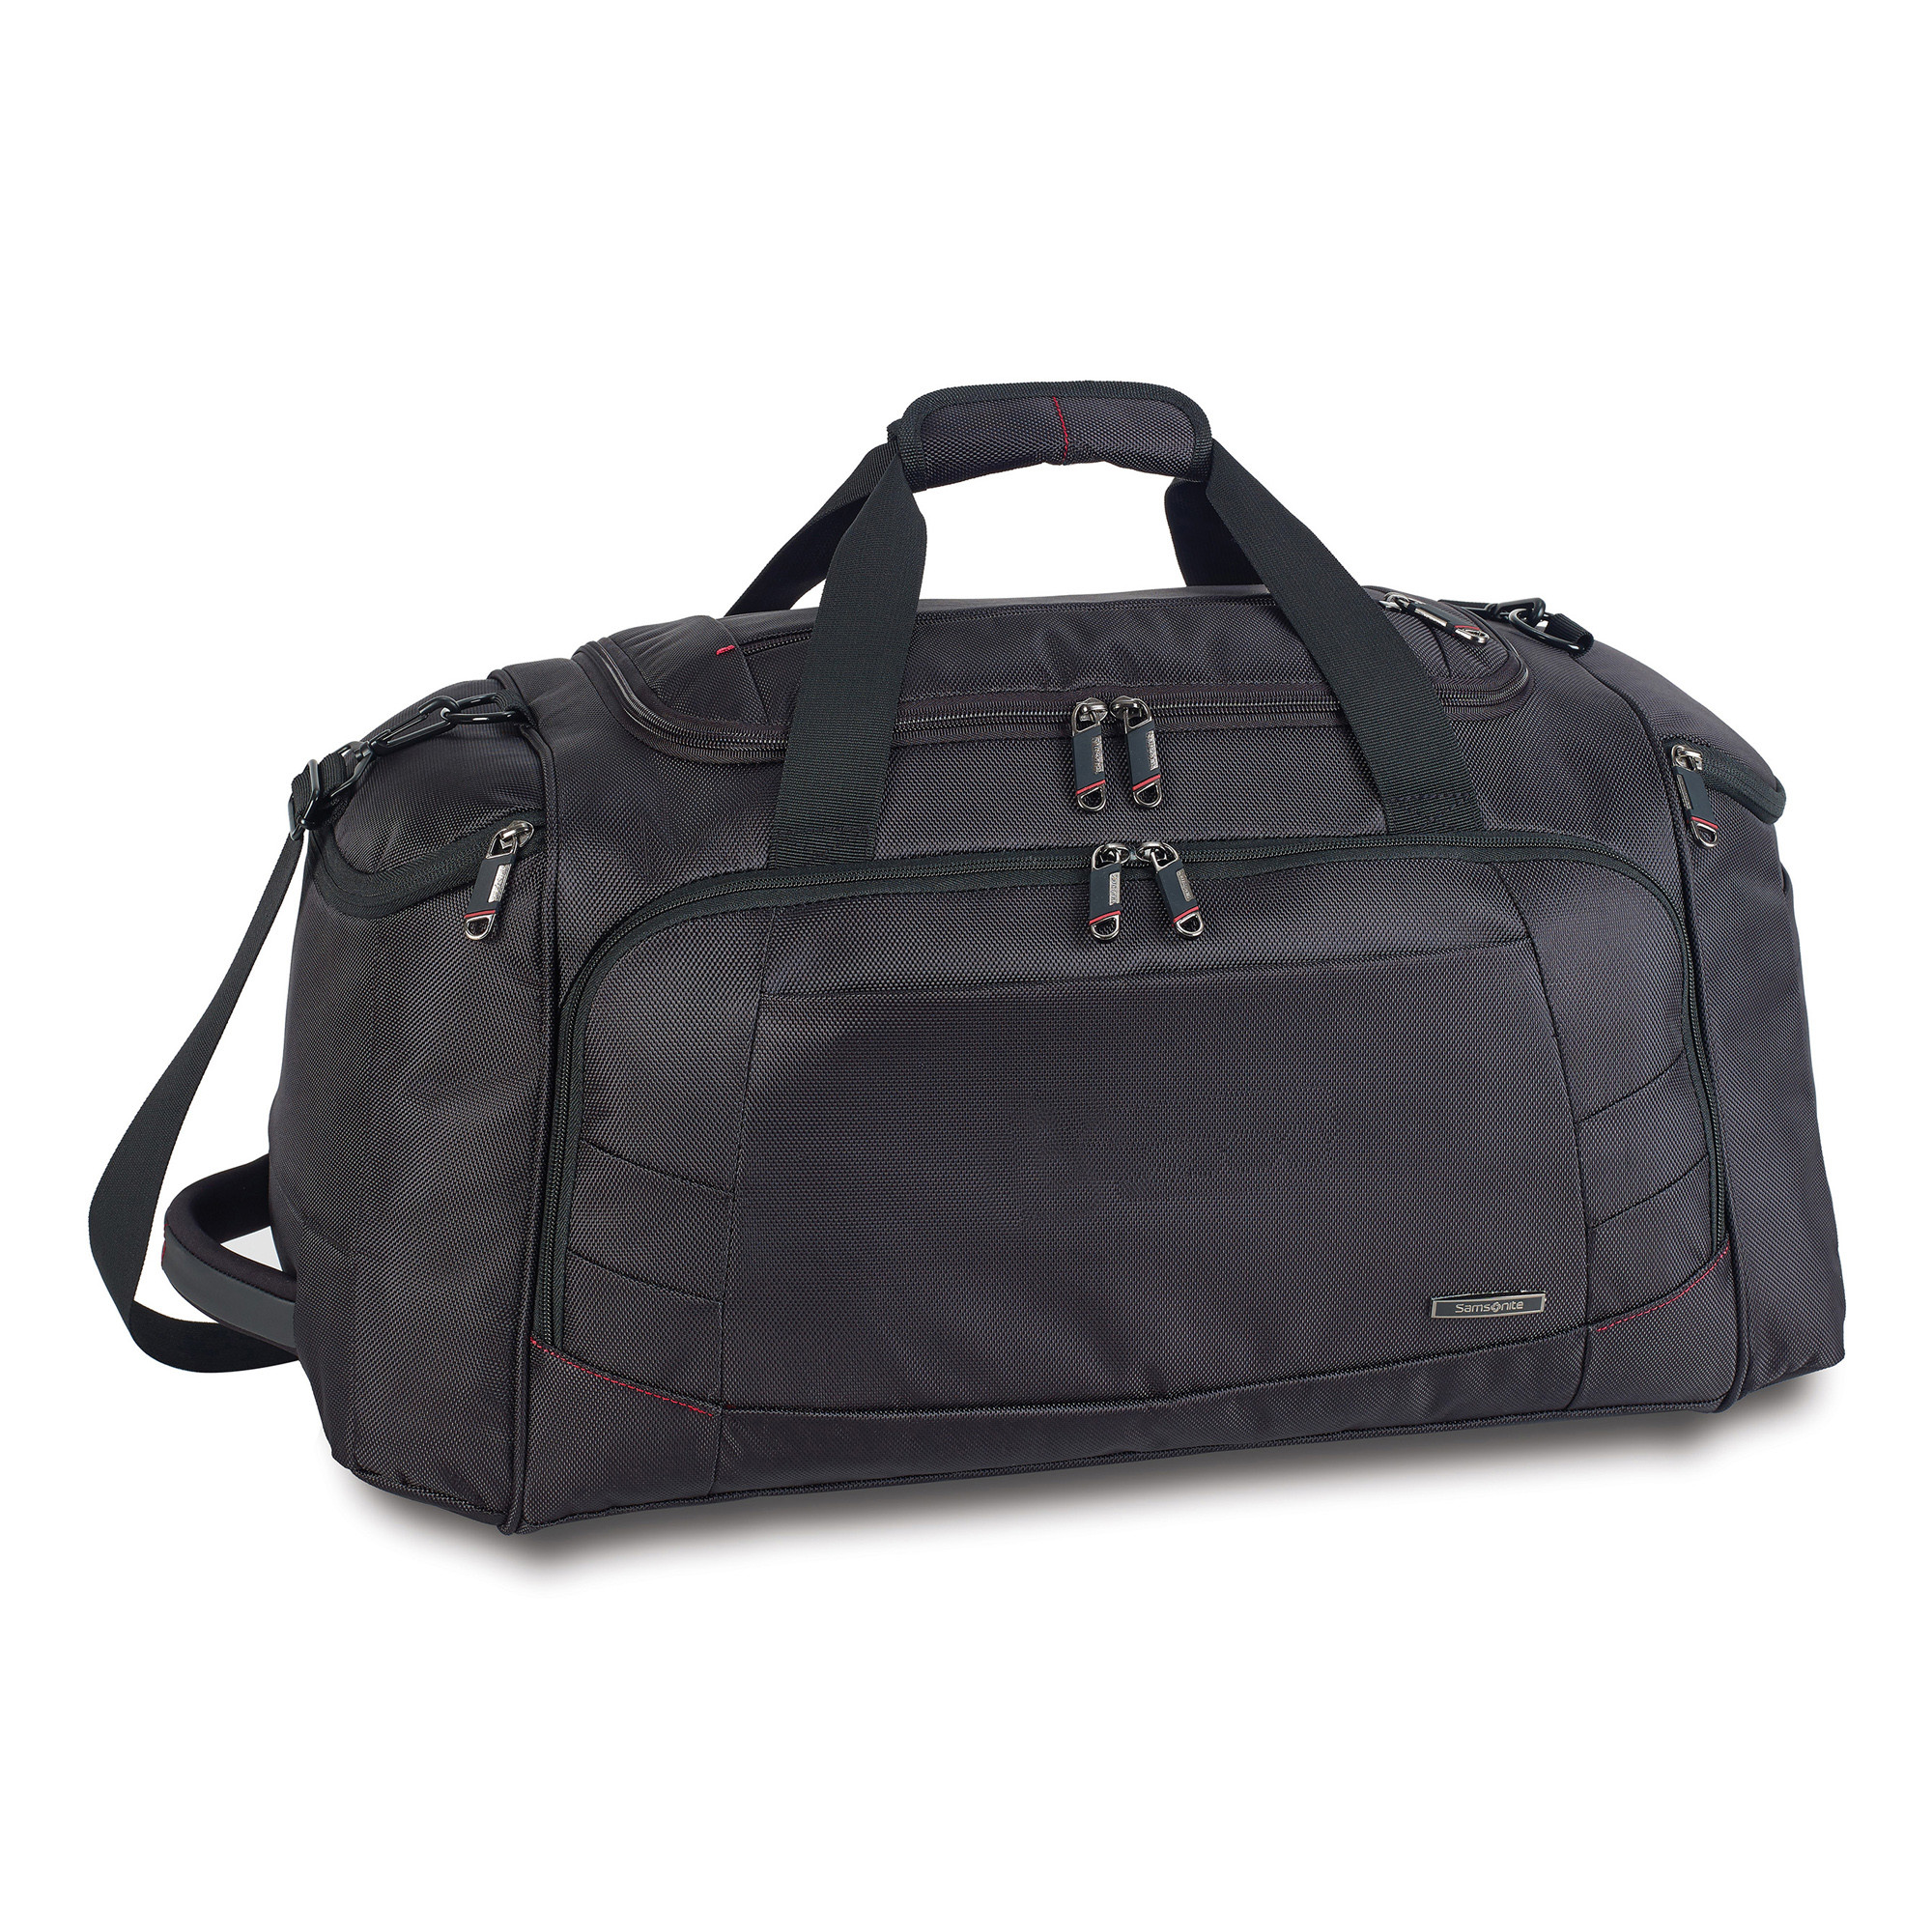 Samsonite 95038 - Xenon 2 Travel Bag